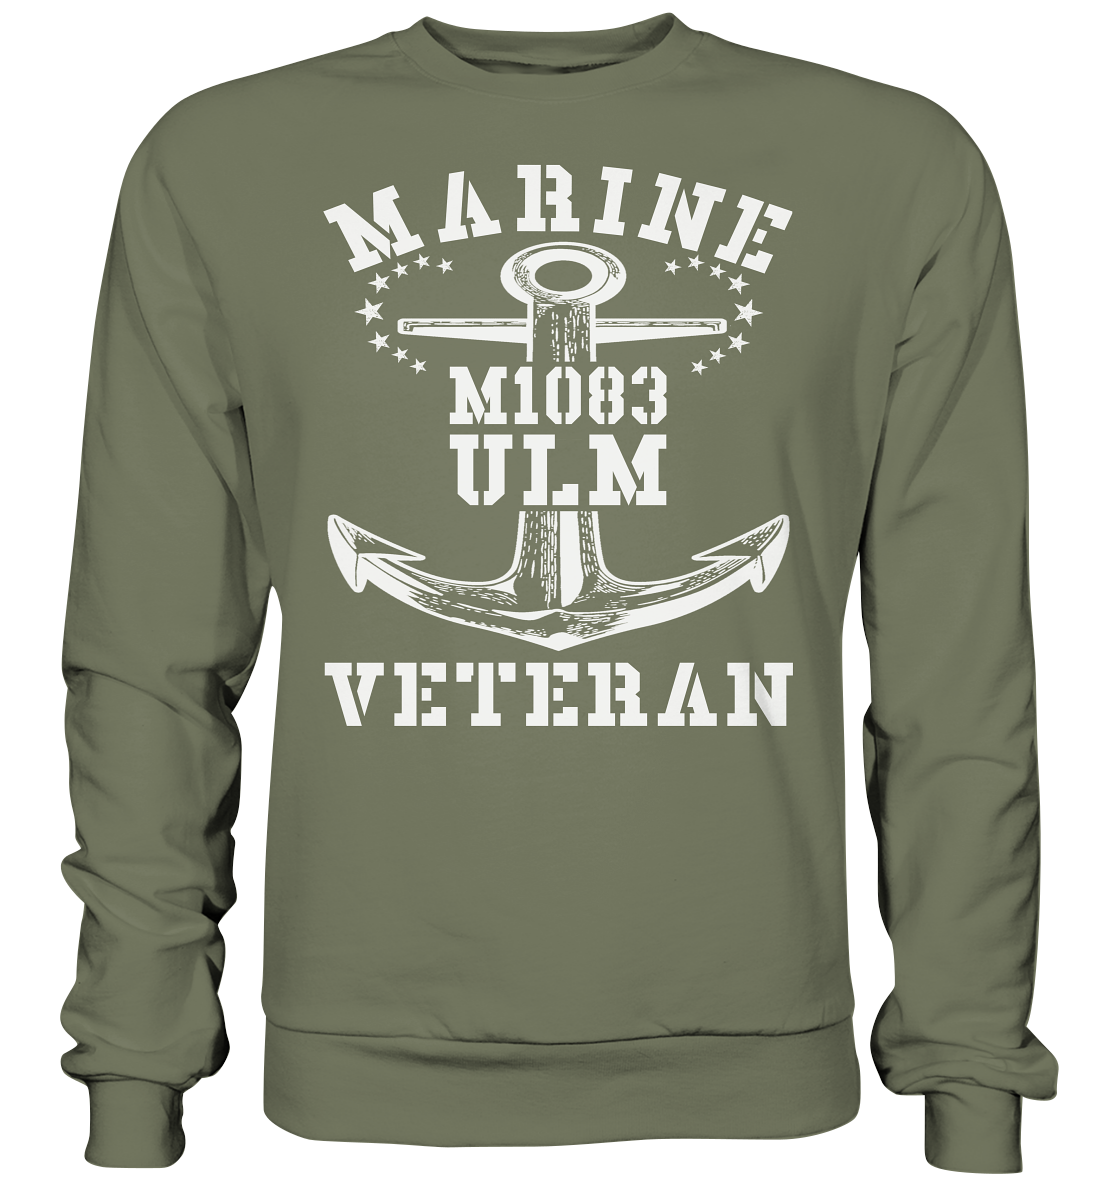 MARINE VETERAN M1083 ULM - Premium Sweatshirt